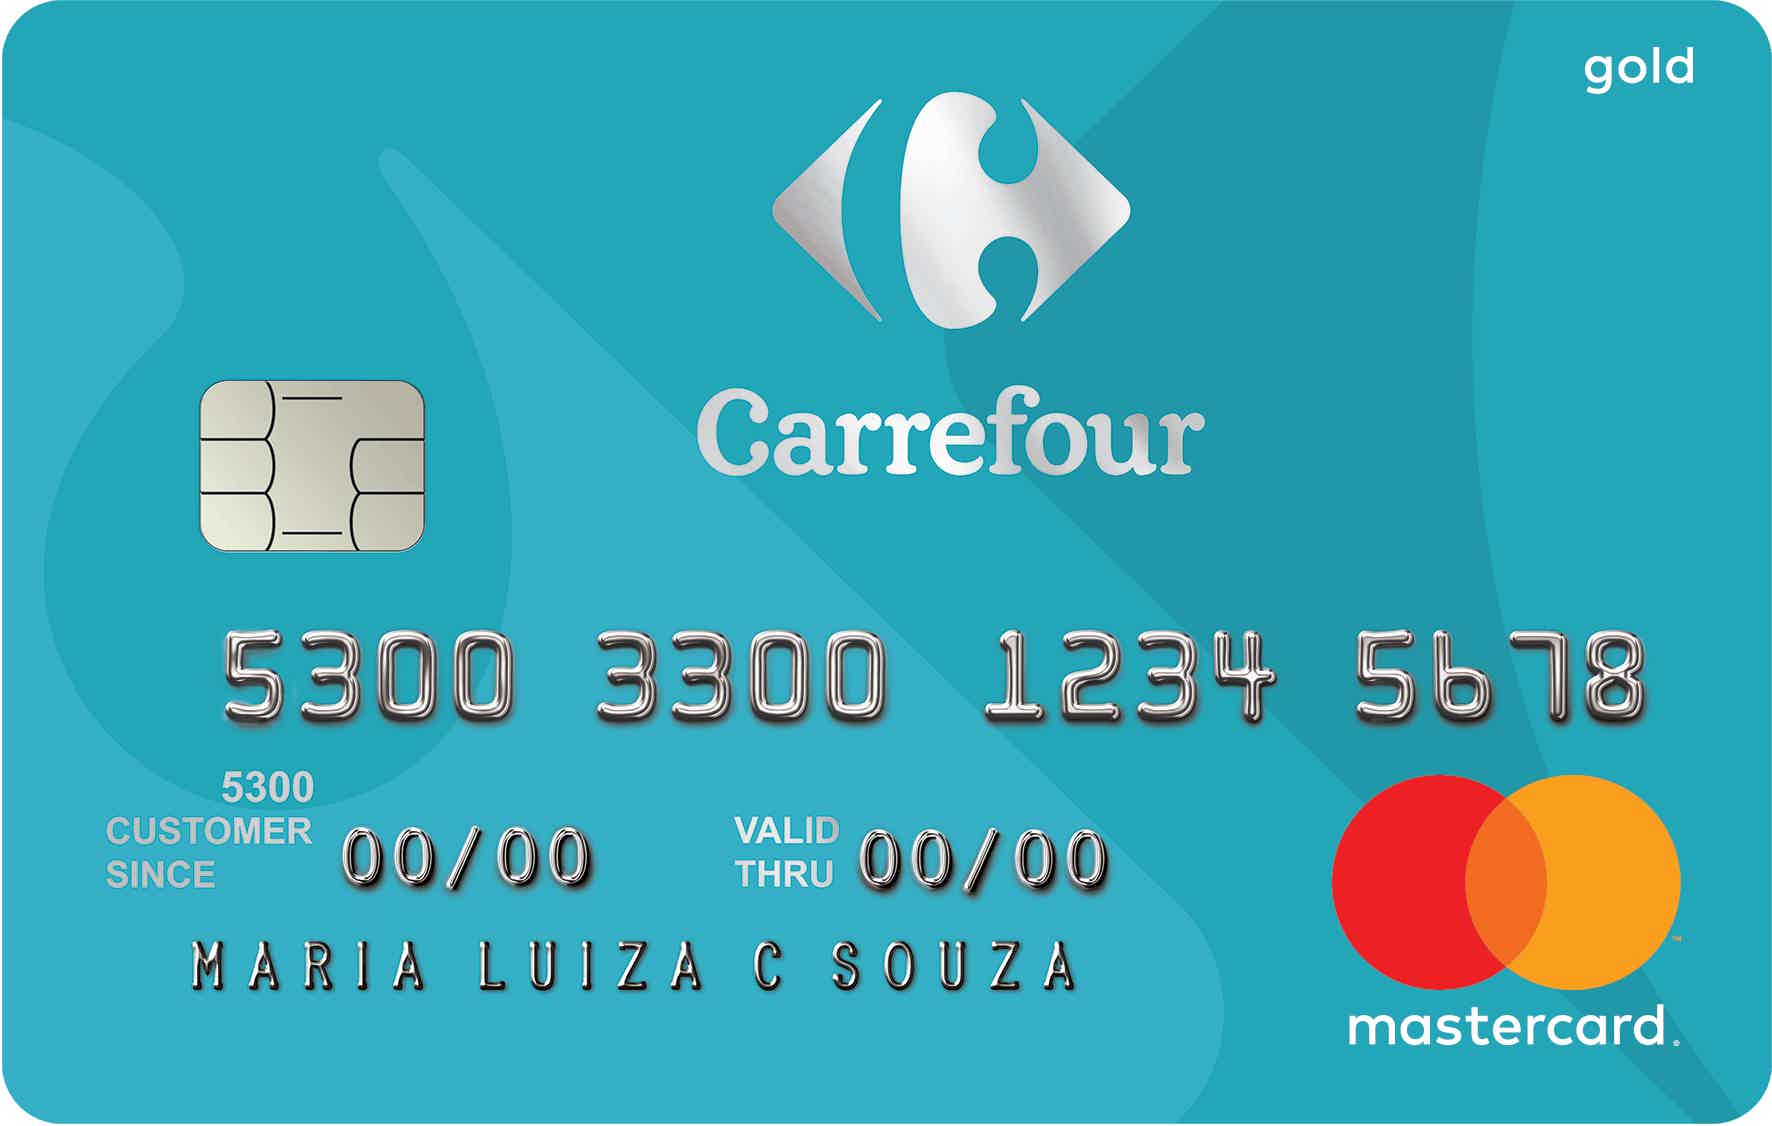  Cartão Hipercard ou Cartão Carrefour: qual escolher? Imagem: Fdr